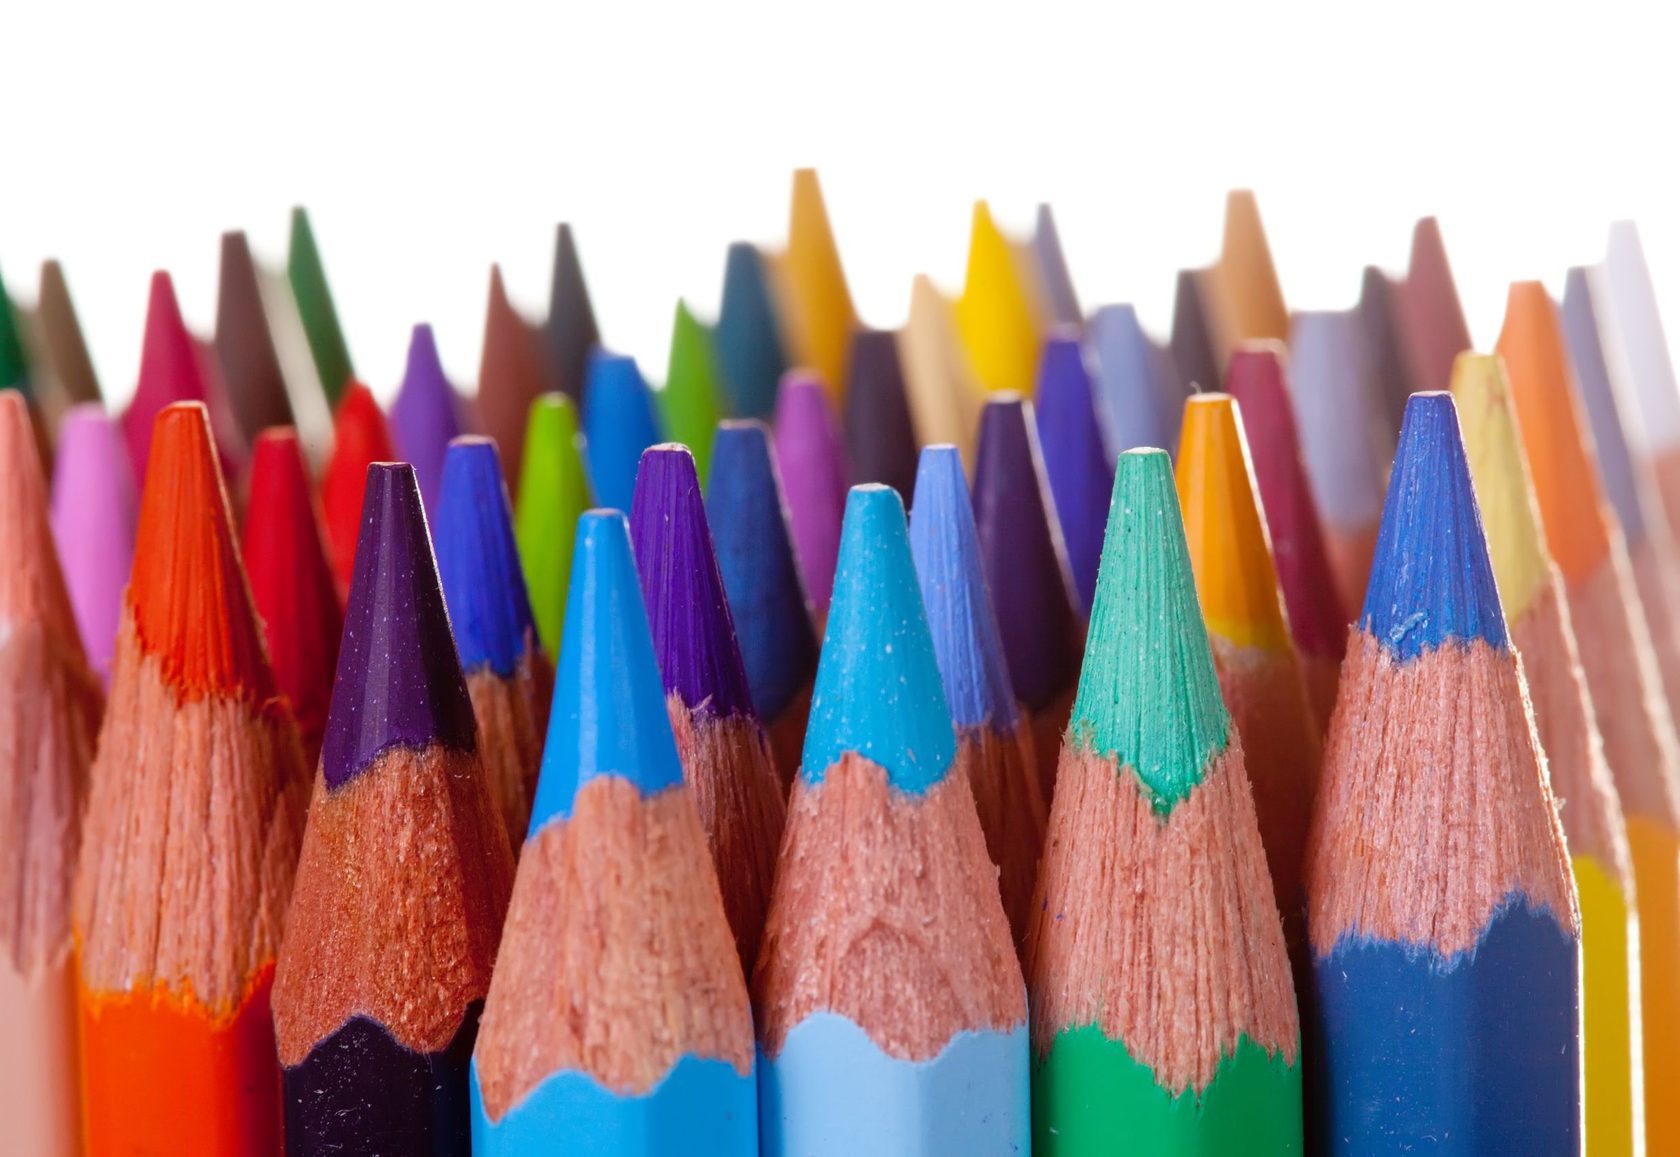 These your pencils. Цветные карандаши на белом фоне. Много карандашей. Фотосессия с карандашами. Куча карандашей.